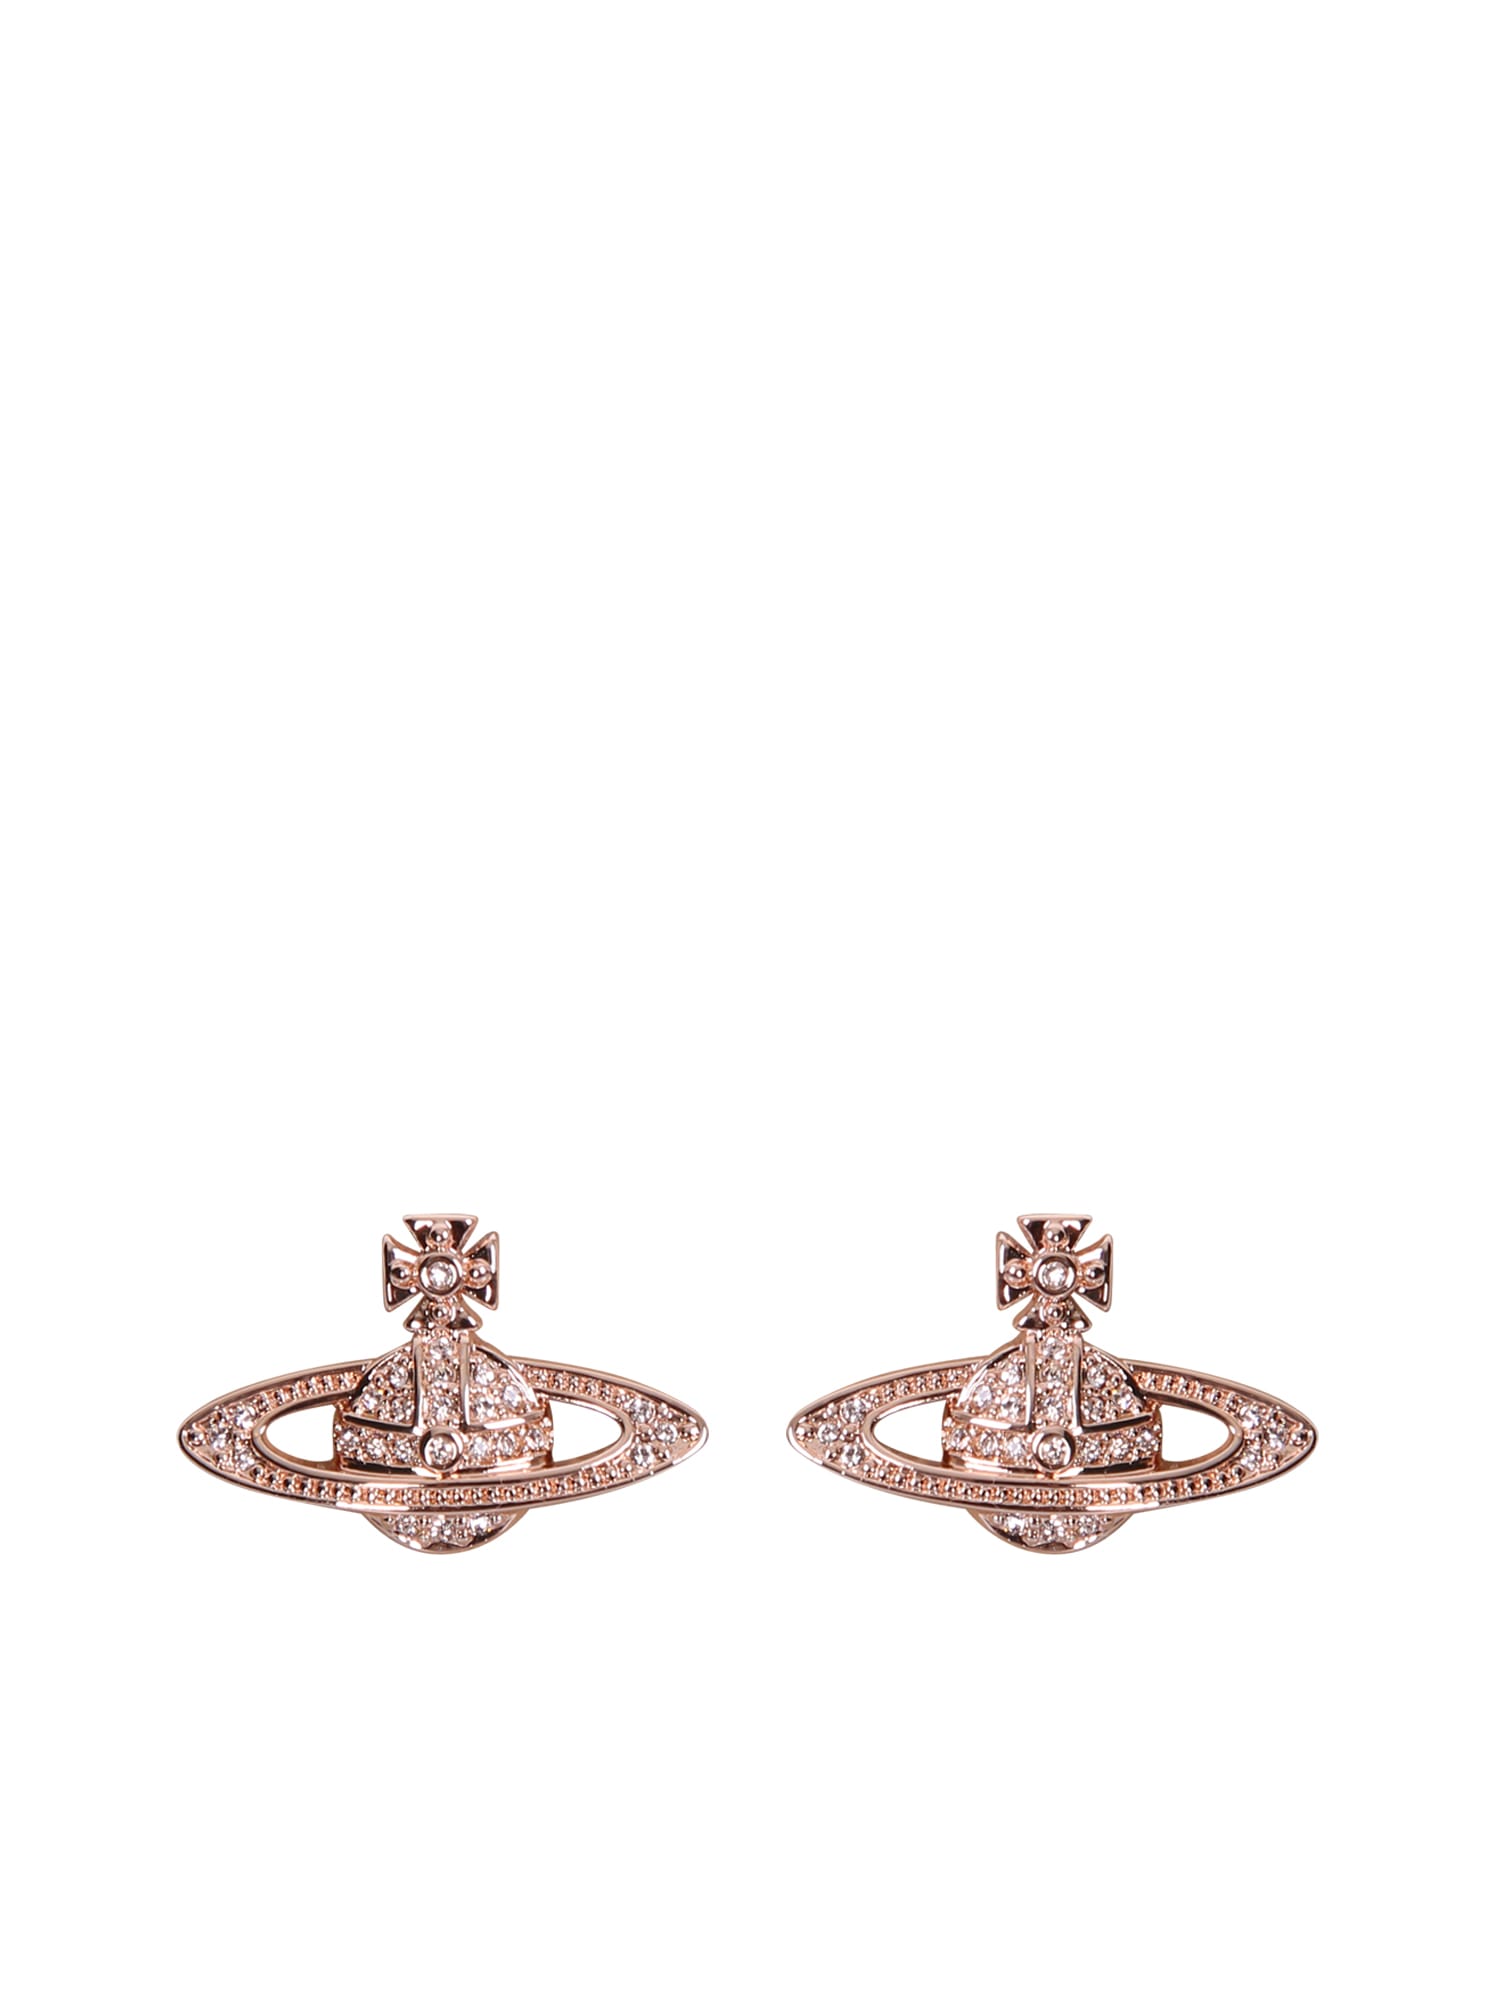 Vivienne Westwood Mini Bas Relief Gold Rose Earrings